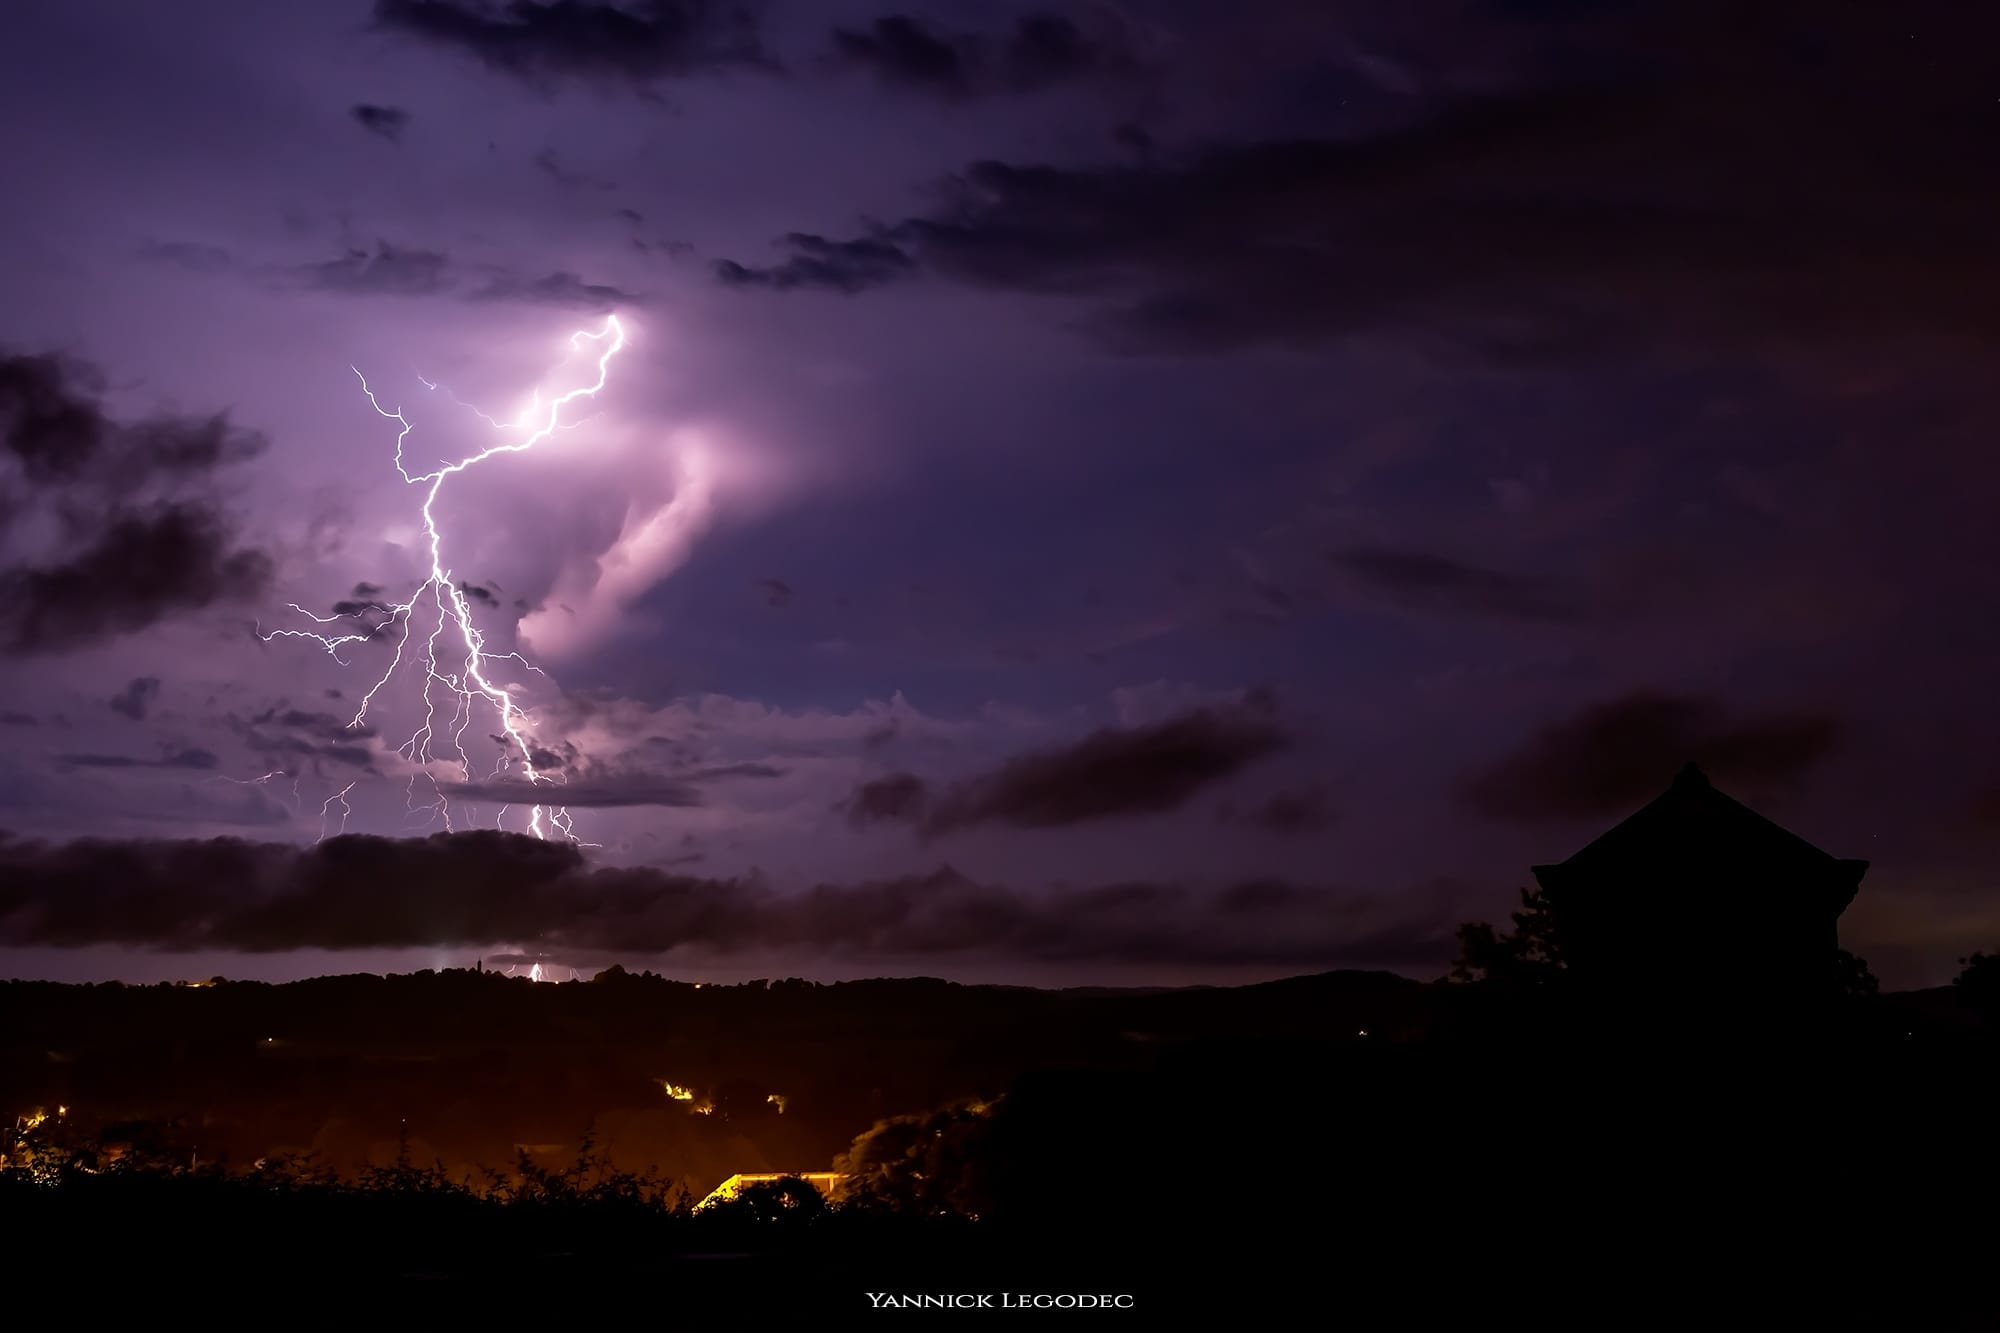 Lightning rain
By @chroniques d'un chasseur d'images 
Canon 5D mark III obj canon 24-105L
www.yannicklegodec.com - 01/07/2018 23:00 - Yannick Legodec